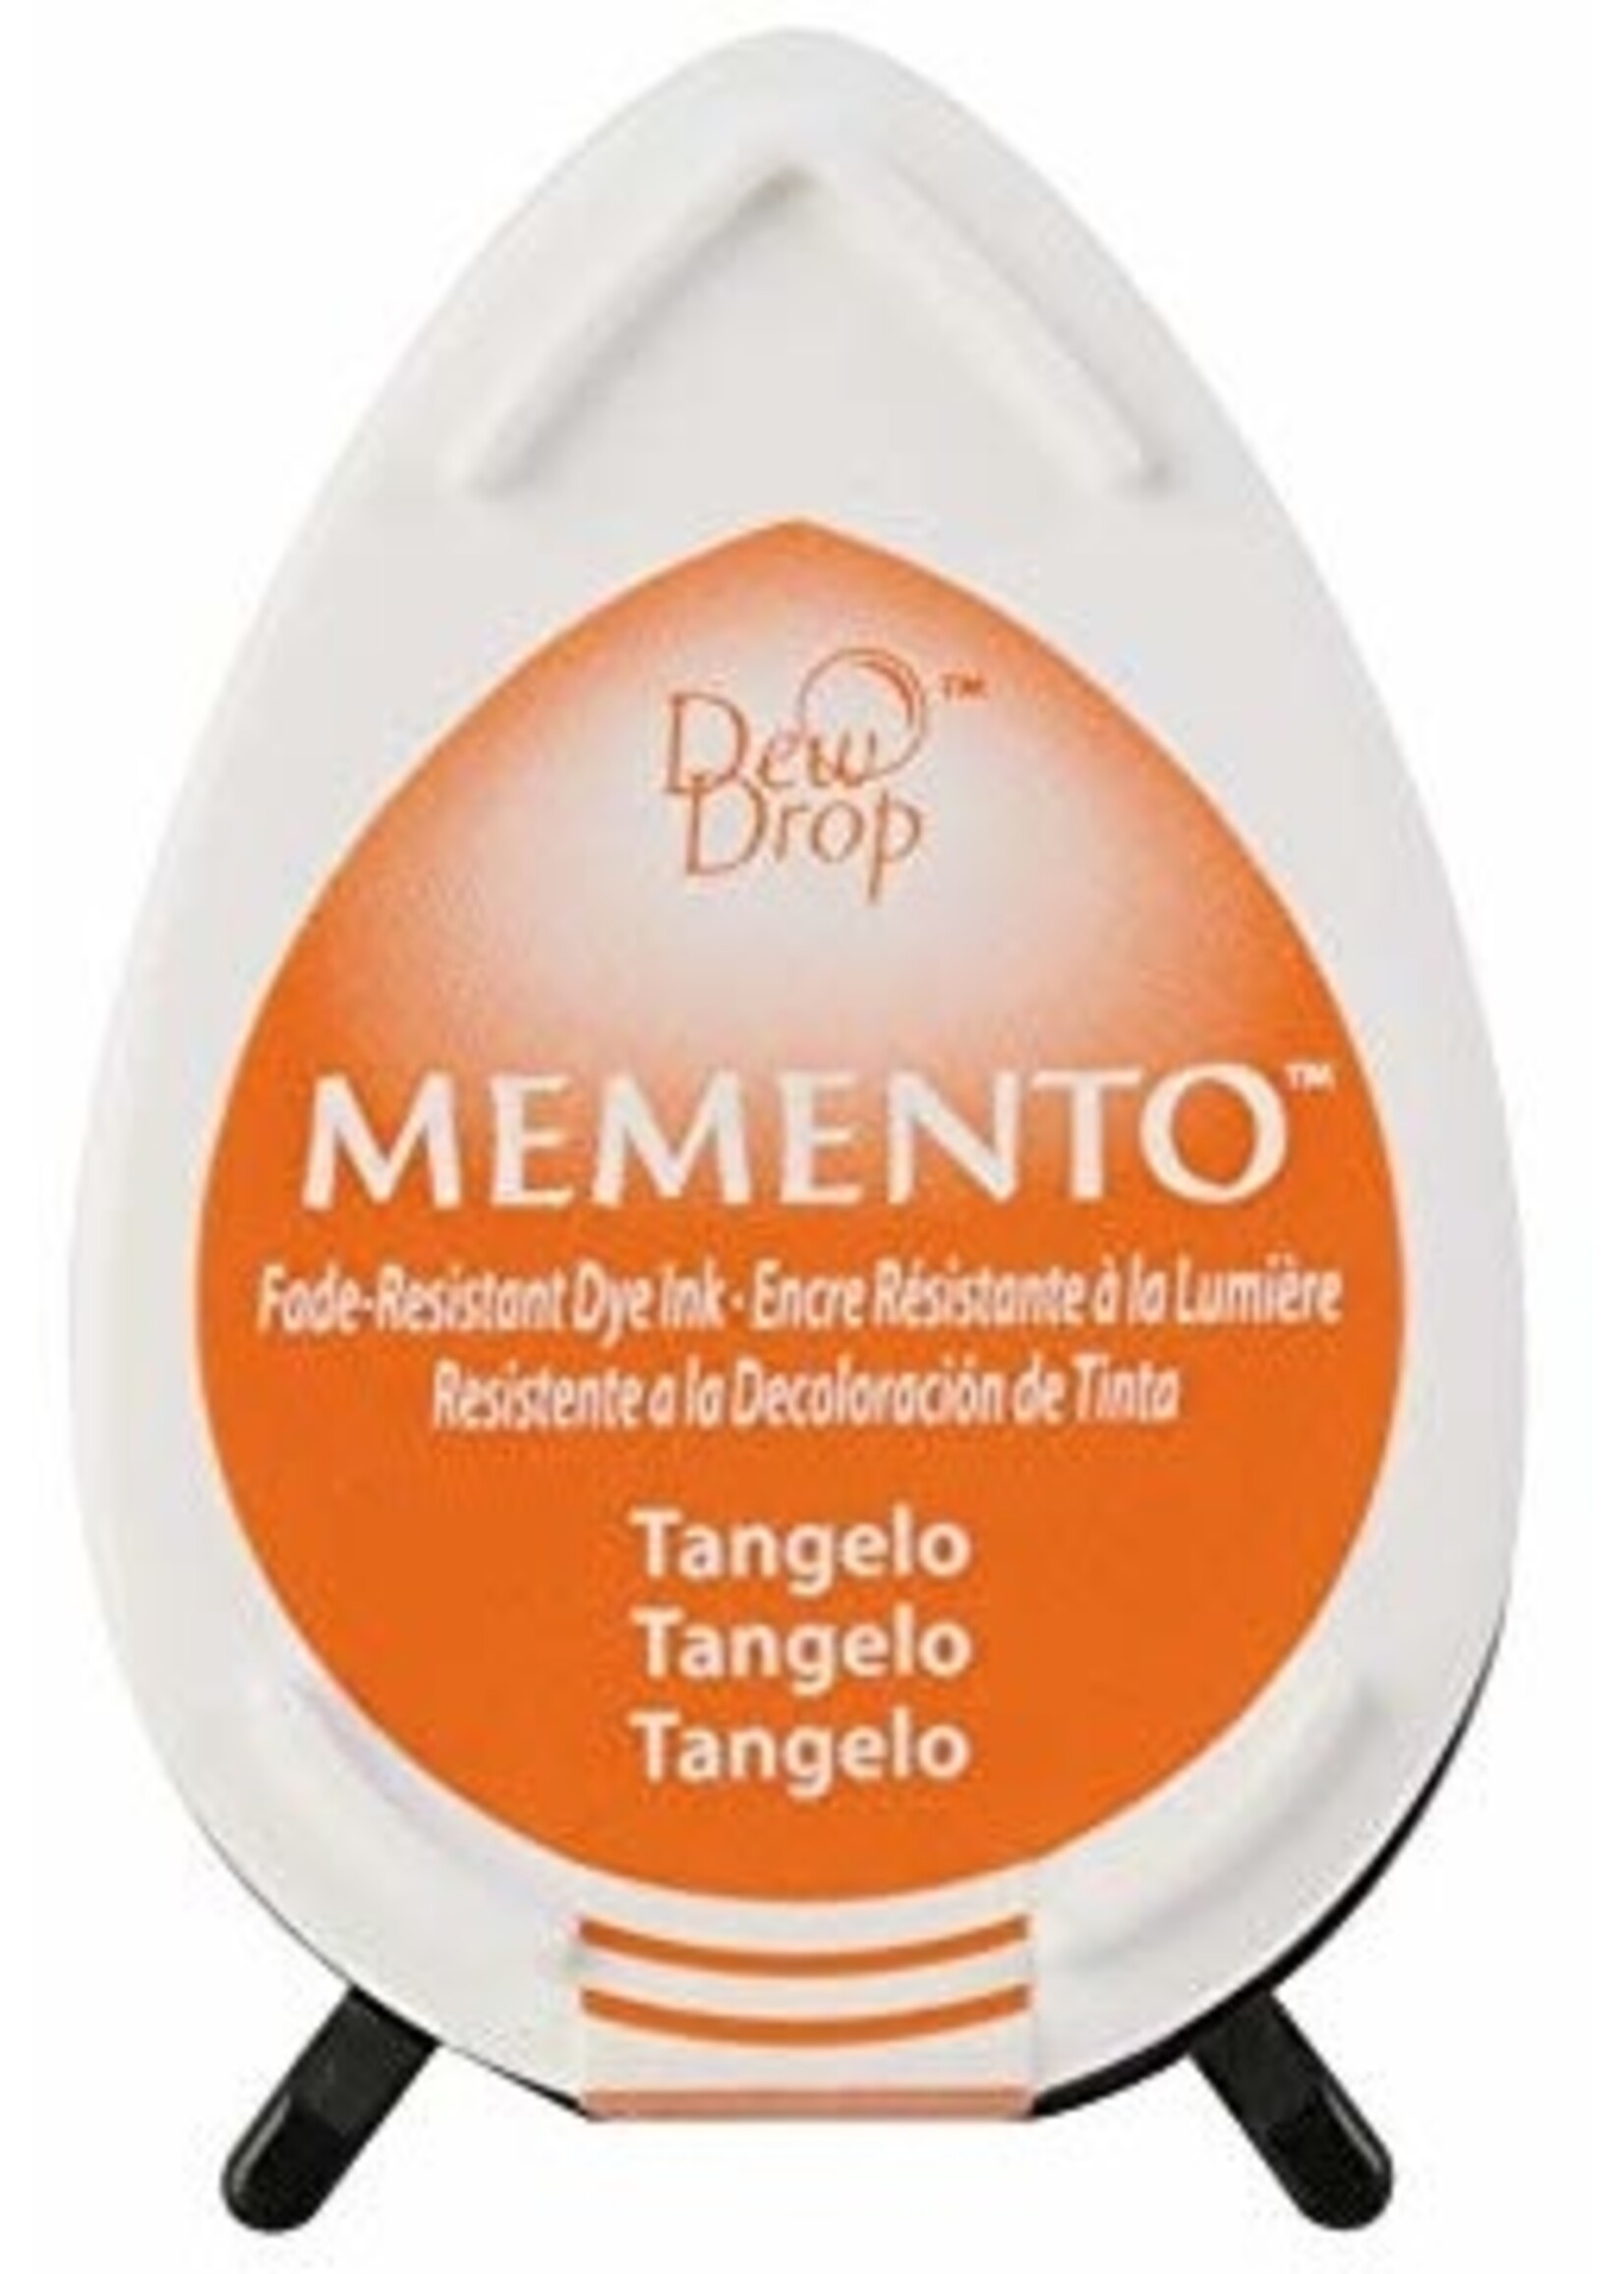 Memento Dew Drop Ink Tangelo